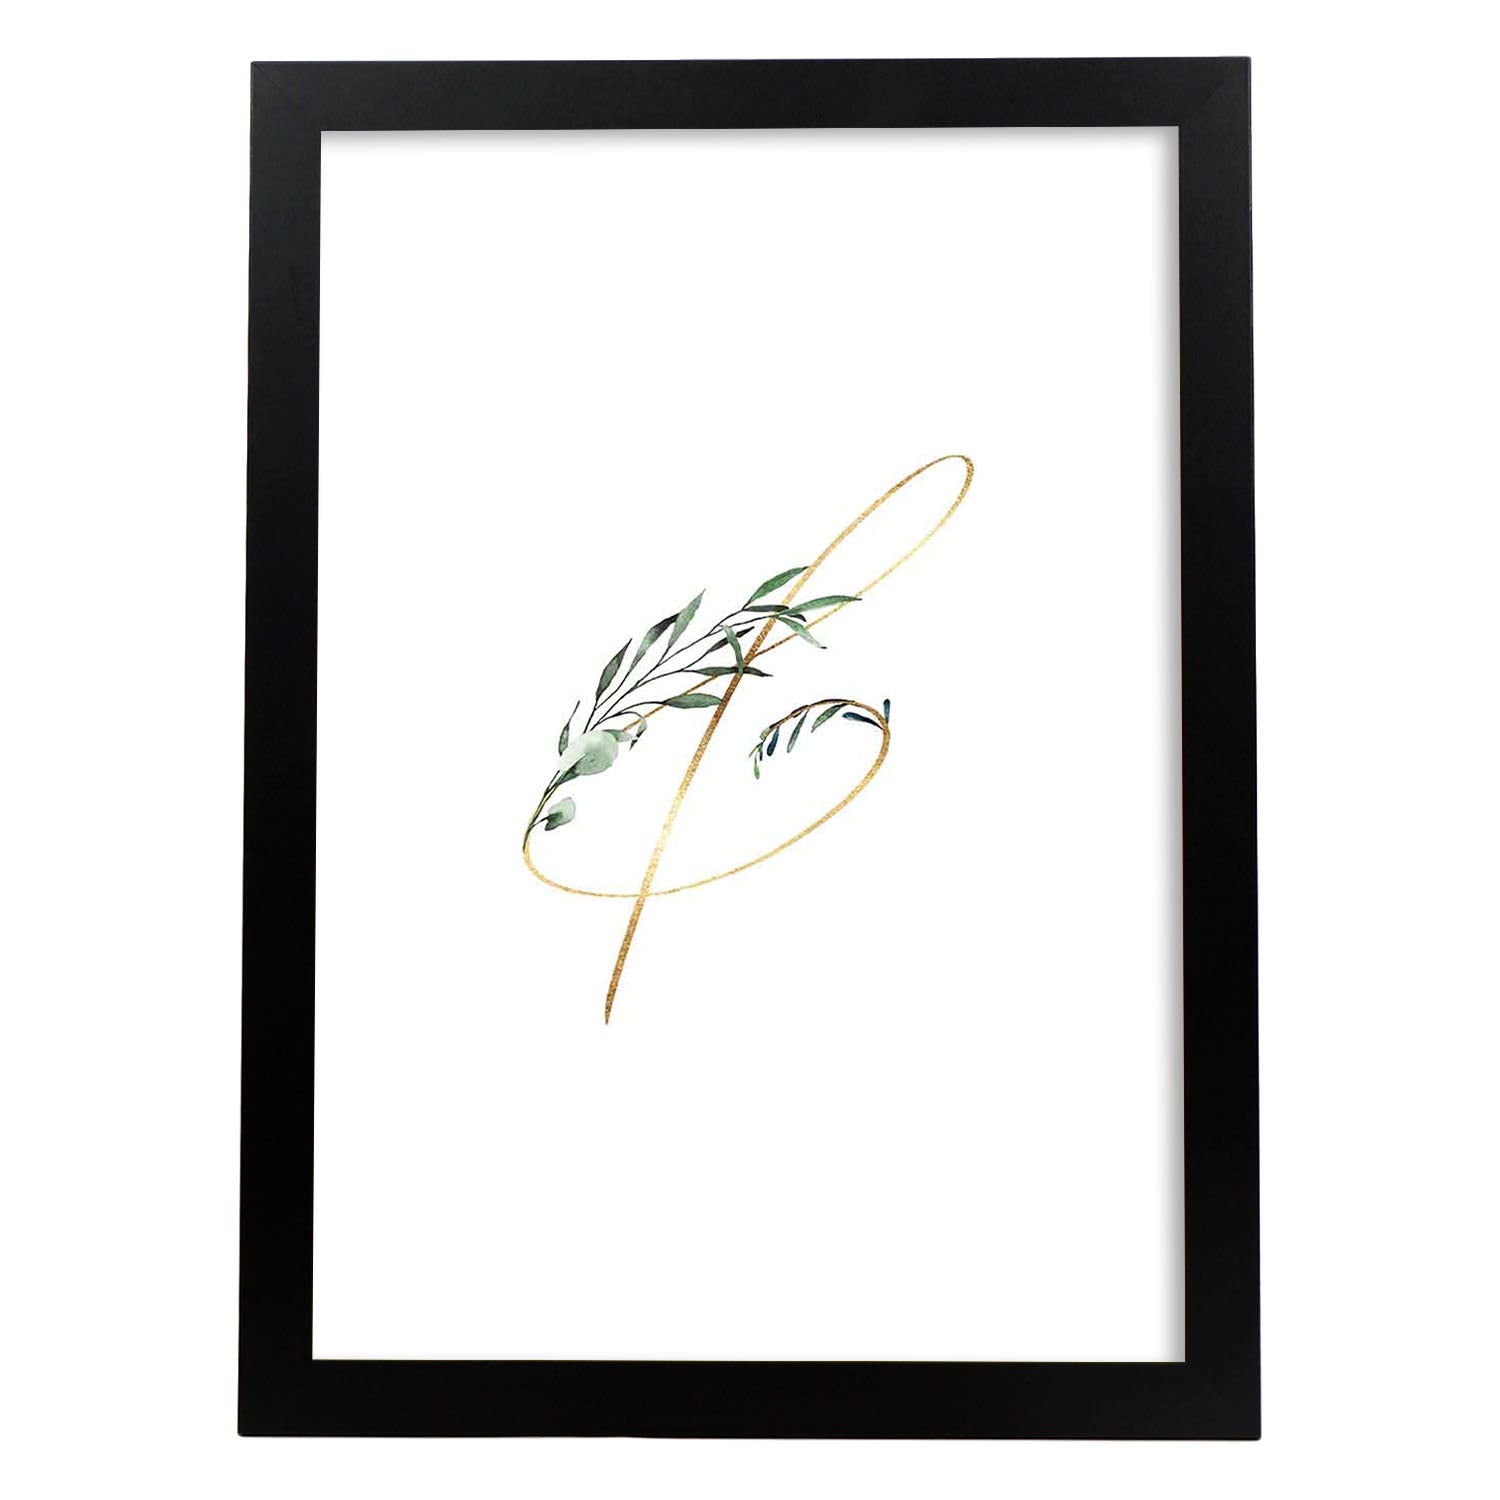 Poster de letra &. Lámina estilo Verde Fino con imágenes del alfabeto.-Artwork-Nacnic-A4-Marco Negro-Nacnic Estudio SL